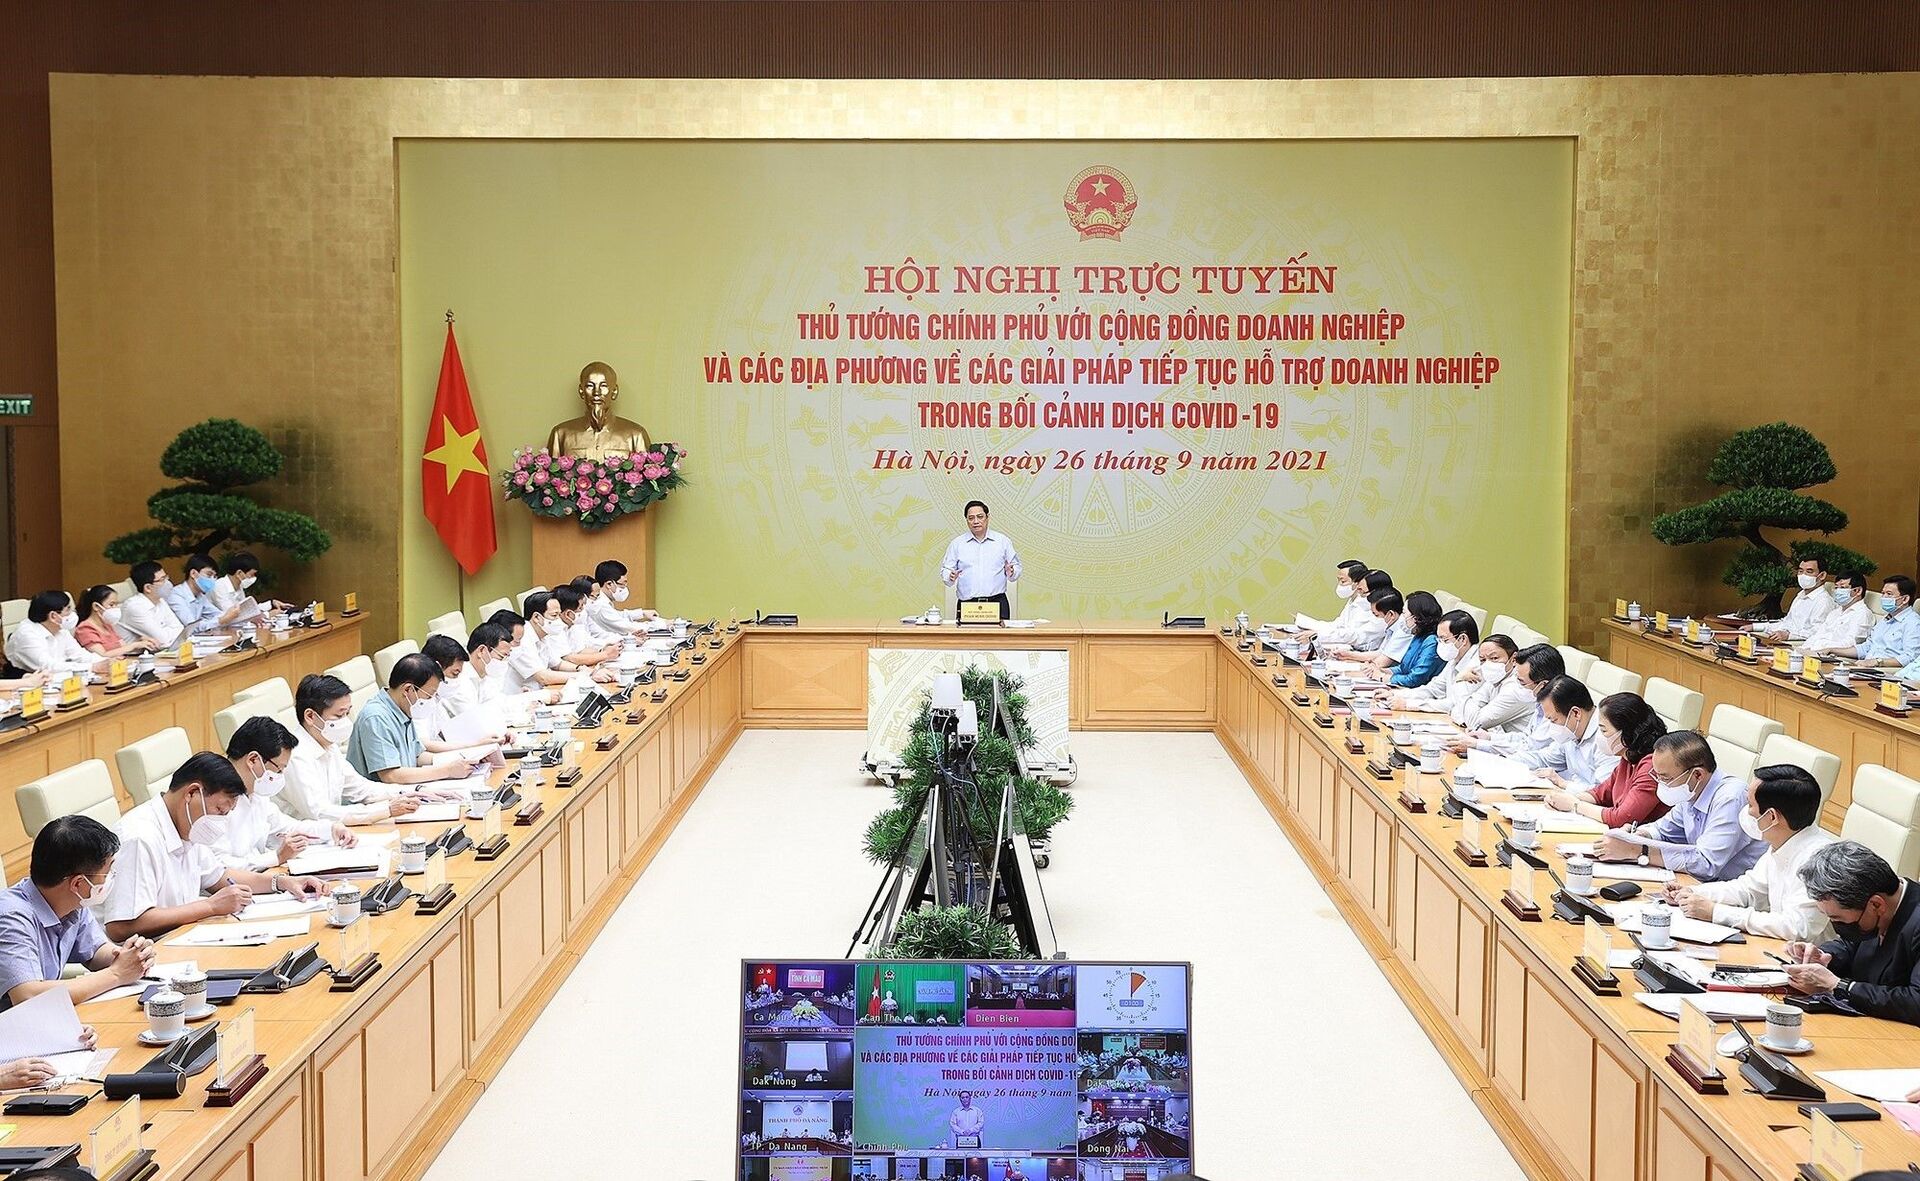 Thủ tướng Phạm Minh Chính chủ trì Hội nghị bàn giải pháp hỗ trợ doanh nghiệp trong bối cảnh dịch COVID-19 - Sputnik Việt Nam, 1920, 05.10.2021